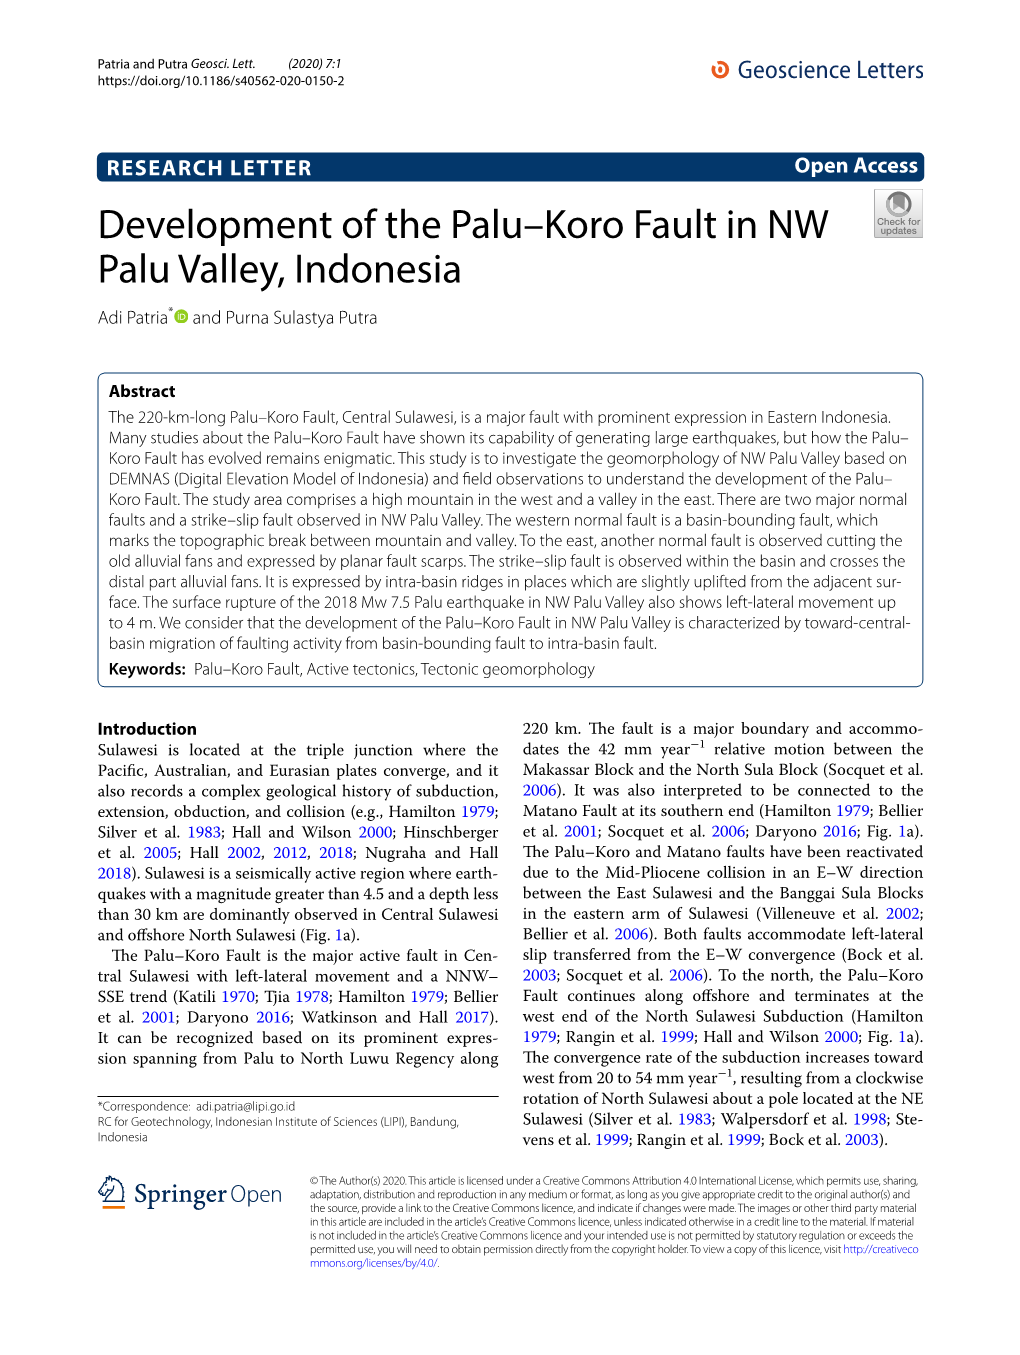 Development of the Palu–Koro Fault in NW Palu Valley, Indonesia Adi Patria* and Purna Sulastya Putra